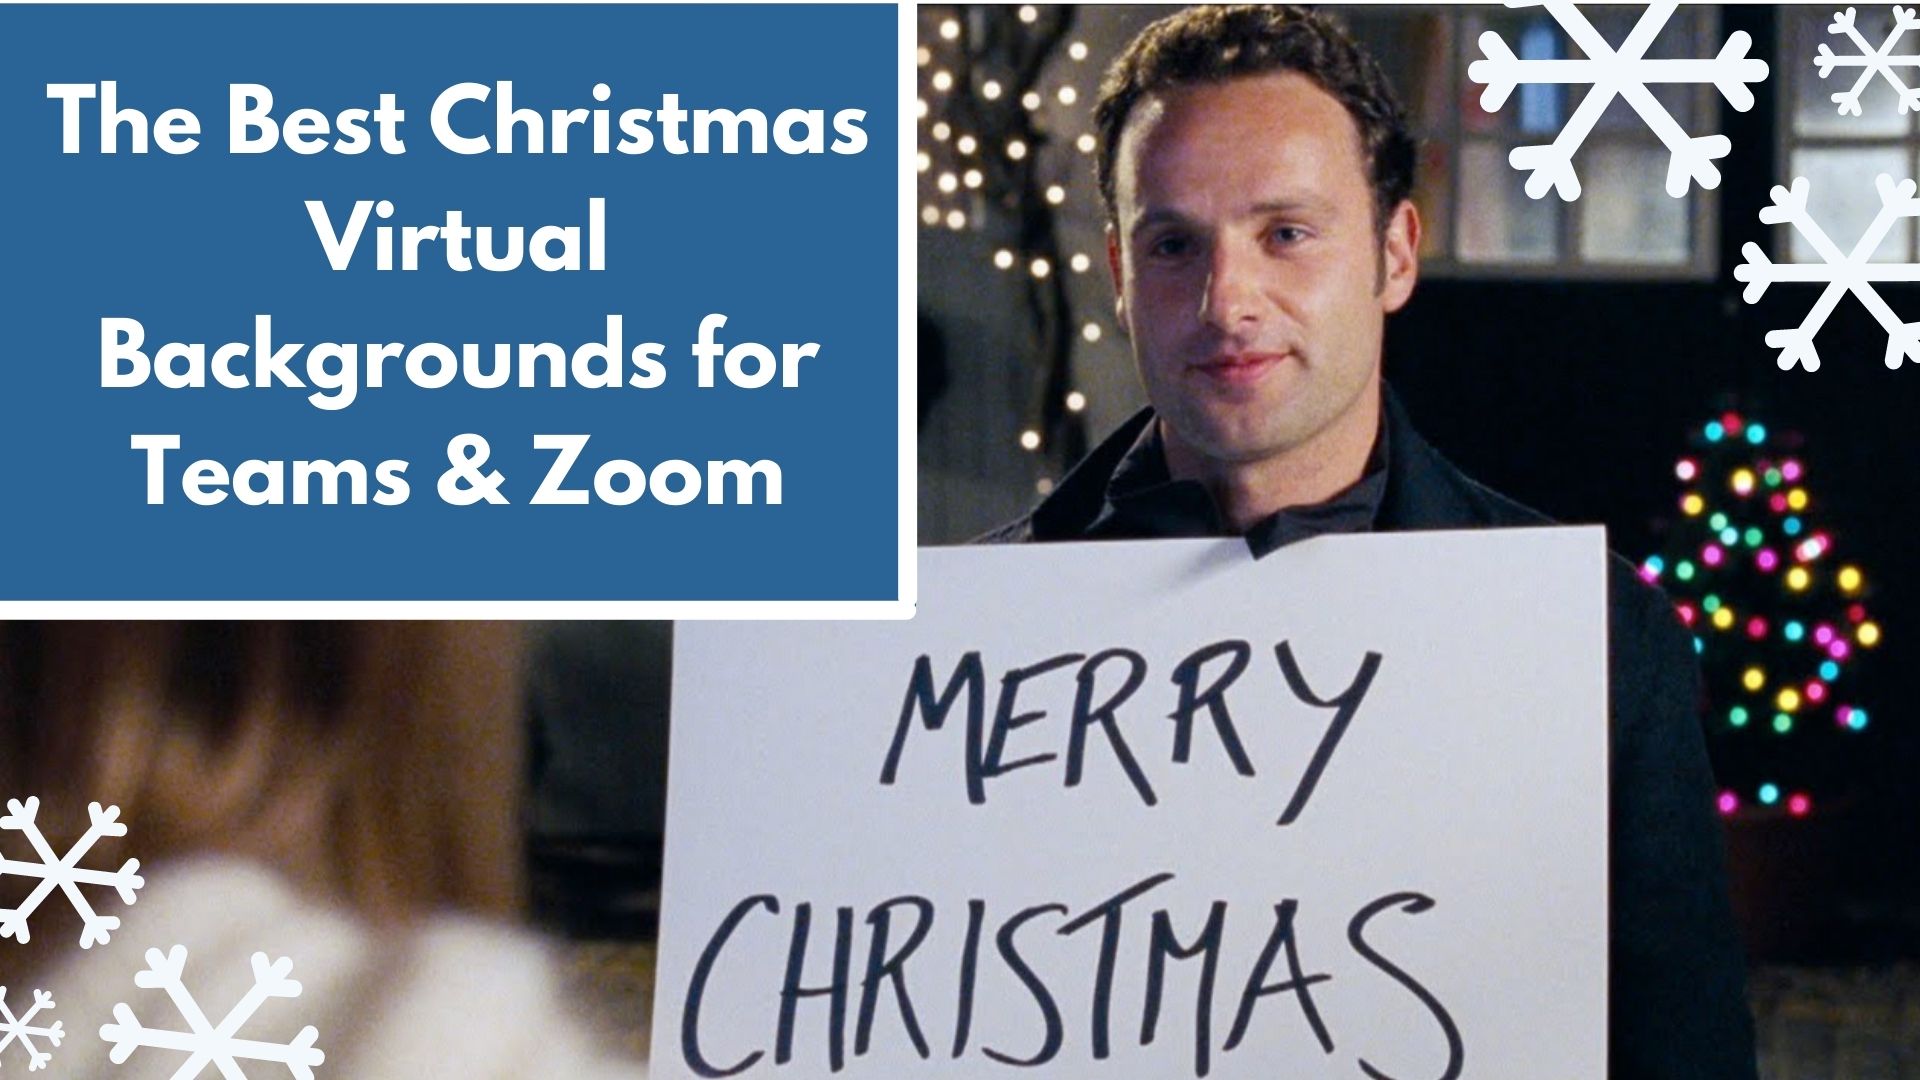 Christmas Zoom Backgrounds: Những hình ảnh zoom nền Giáng sinh đầy màu sắc và rực rỡ sẽ giúp bạn tạo ra không gian vui vẻ và đầy phấn khích cho các cuộc họp trực tuyến trong dịp lễ hội này.